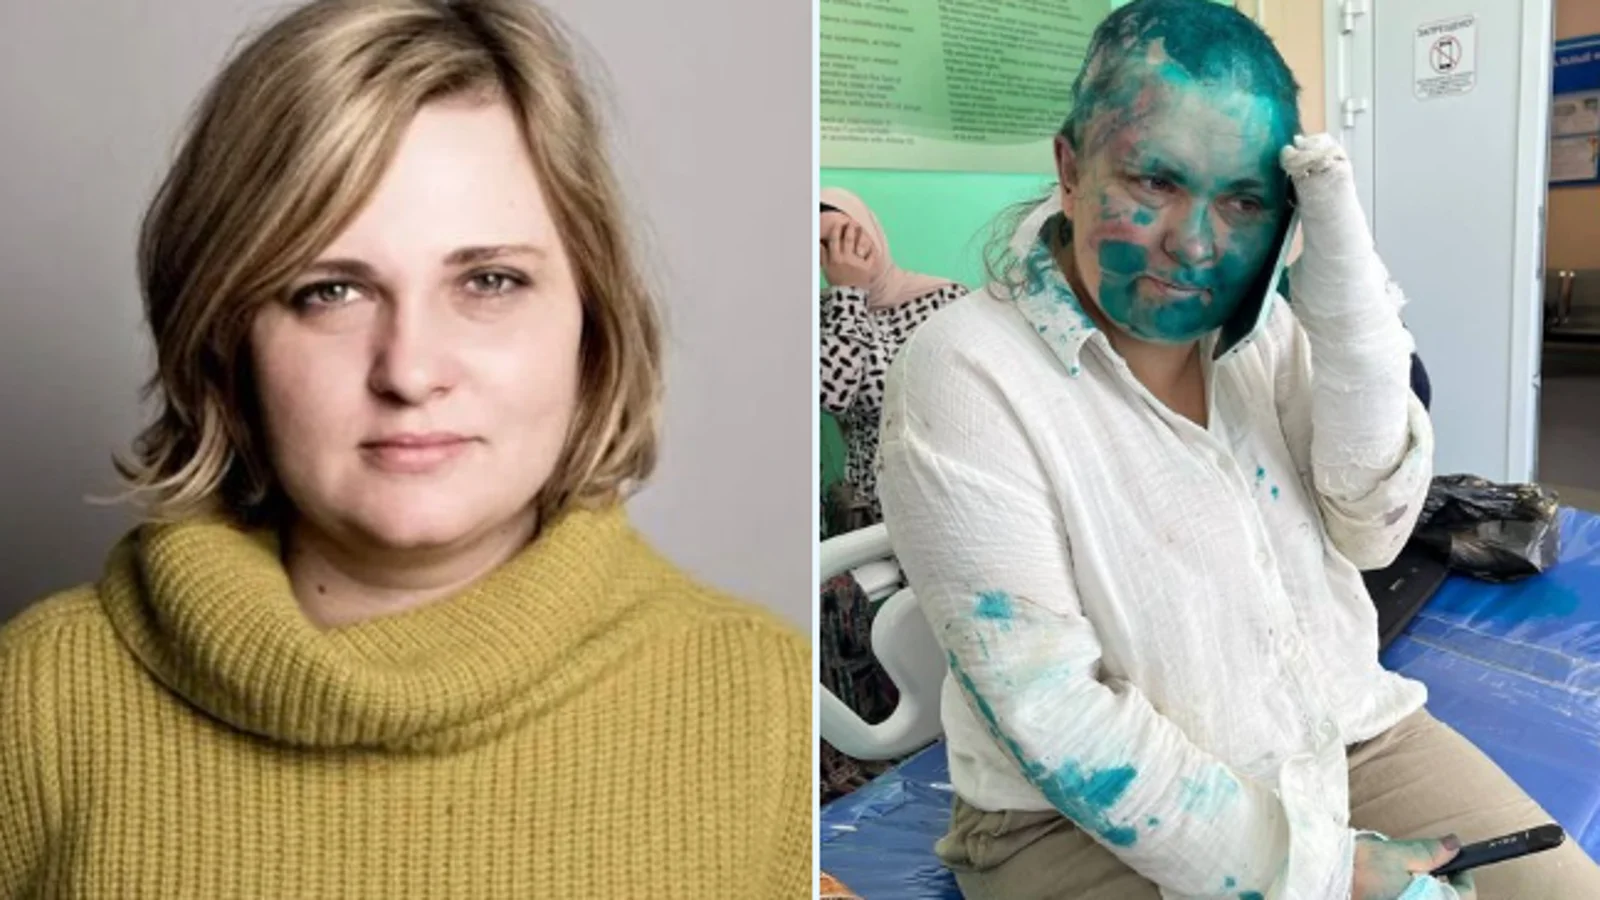 Periodista rusa sufre agresión mientras documentaba agresiones en la federación rusa de Chechenia